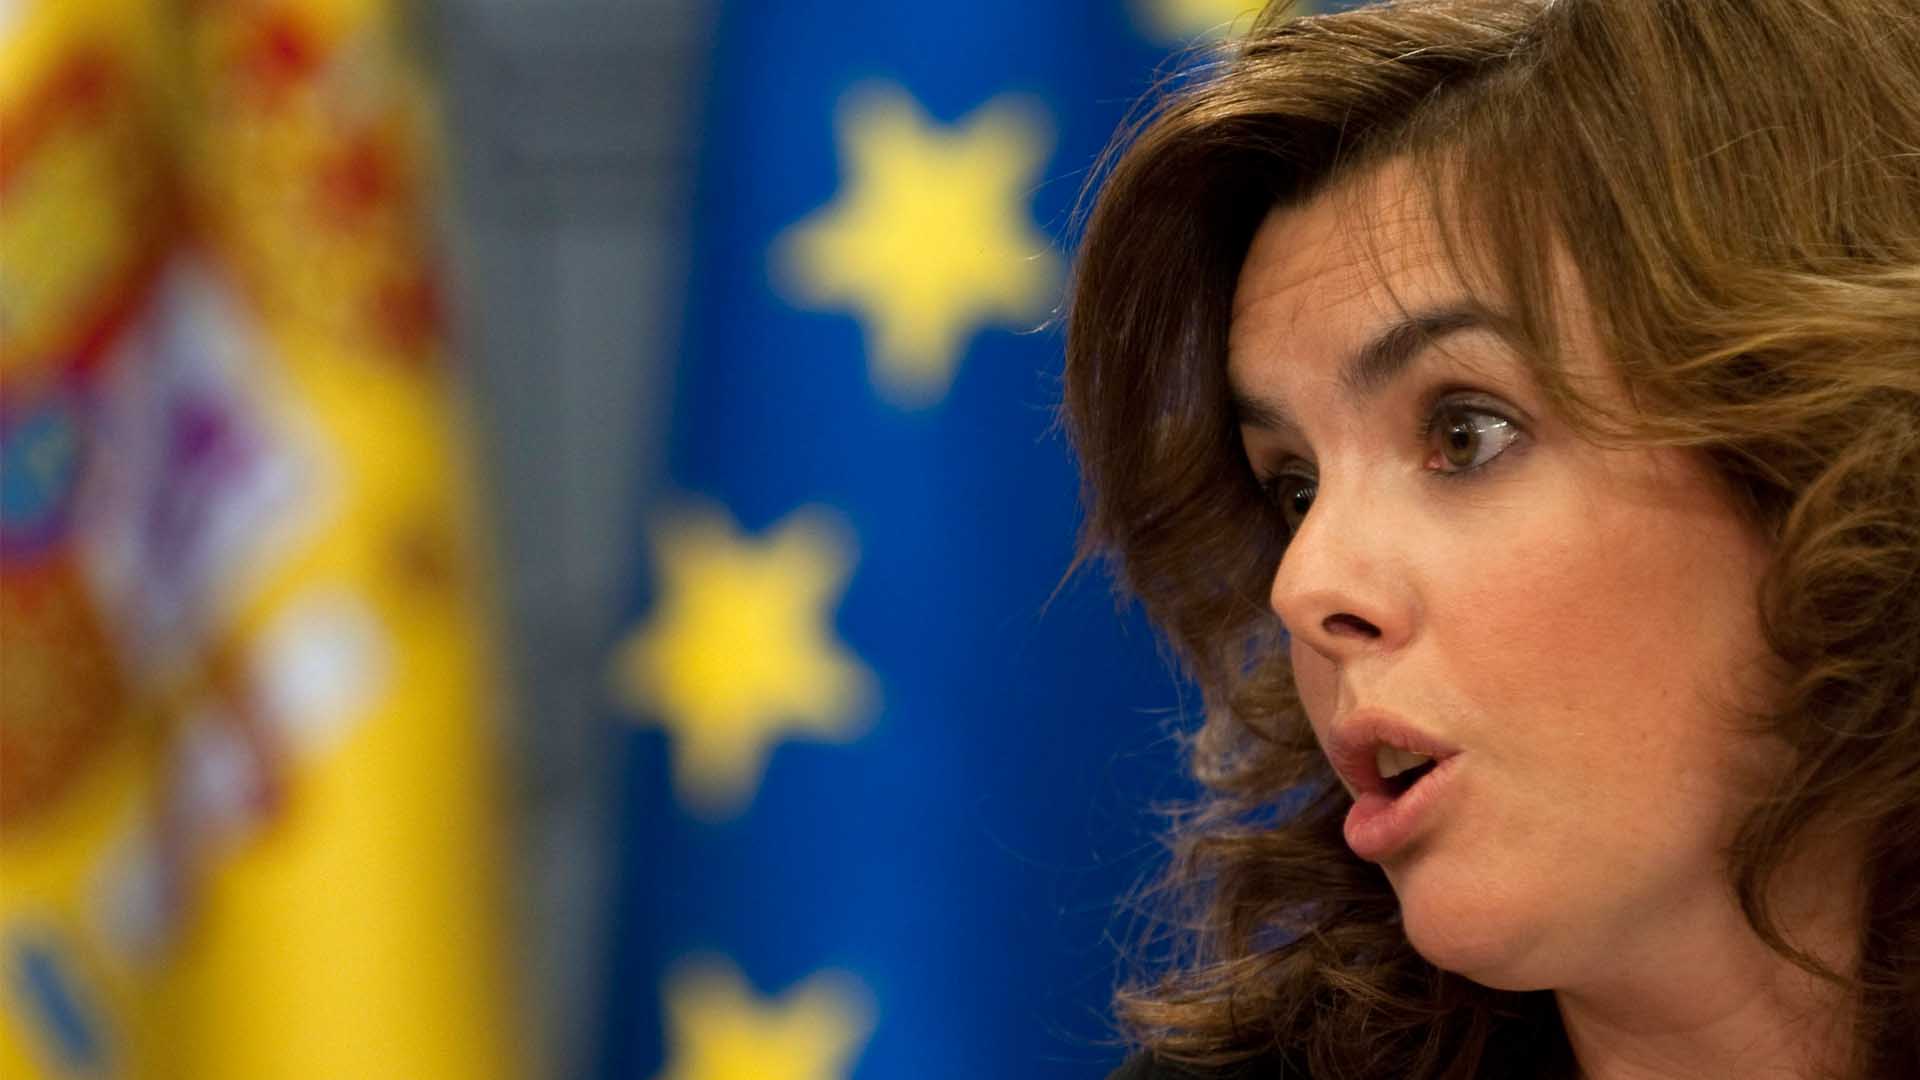 Sáenz de Santamaría pide investigar la autoría del vídeo contra su candidatura